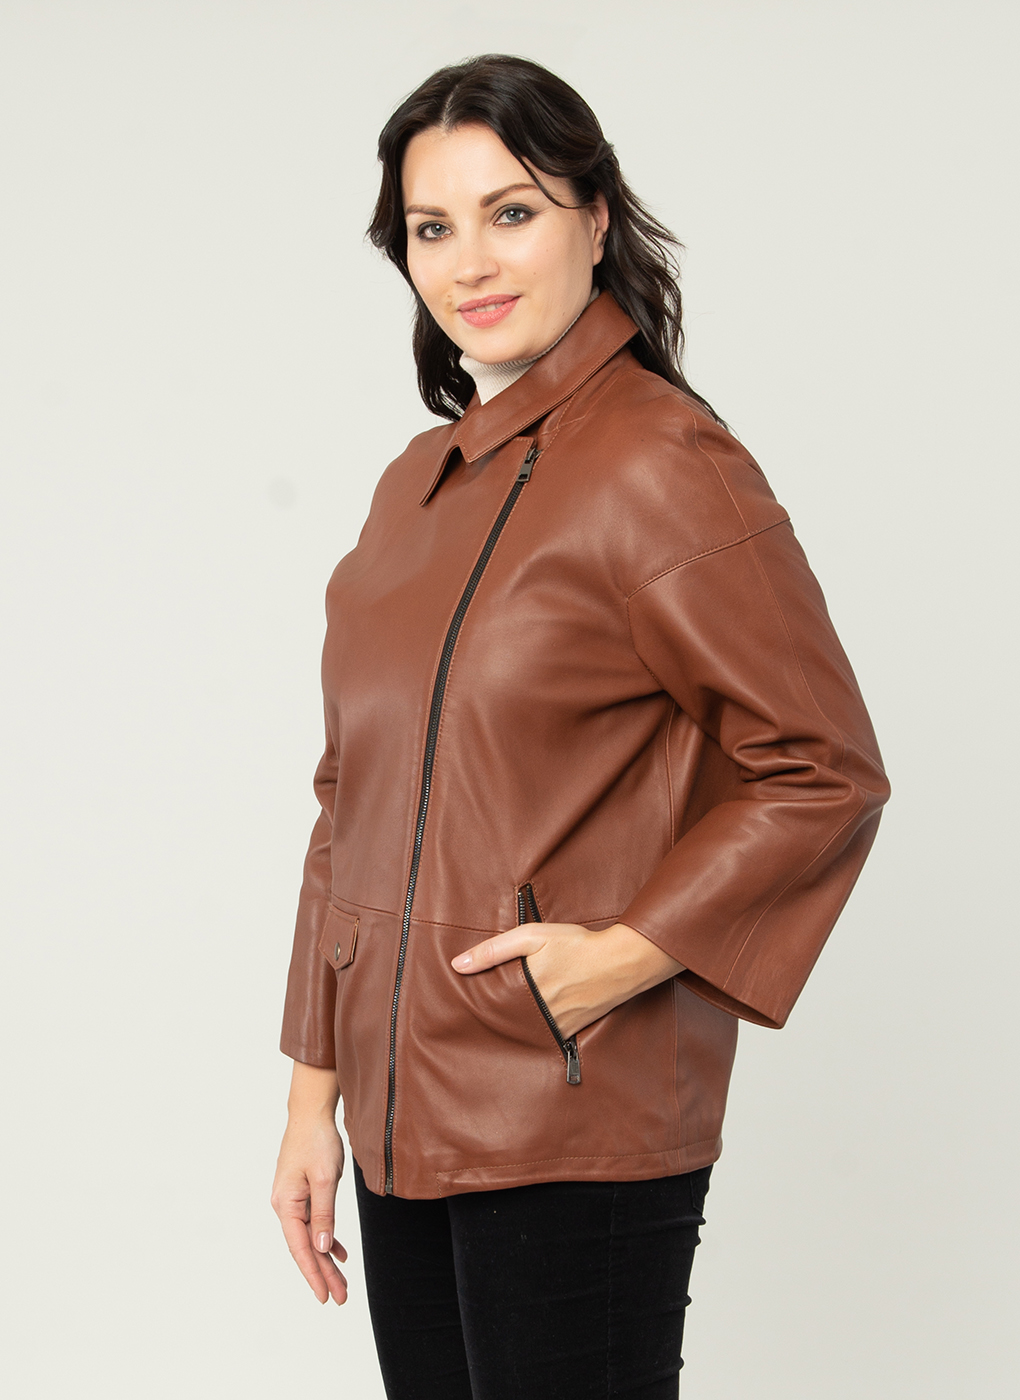 Кожаная куртка женская Каляев 52511 коричневая 58 RU